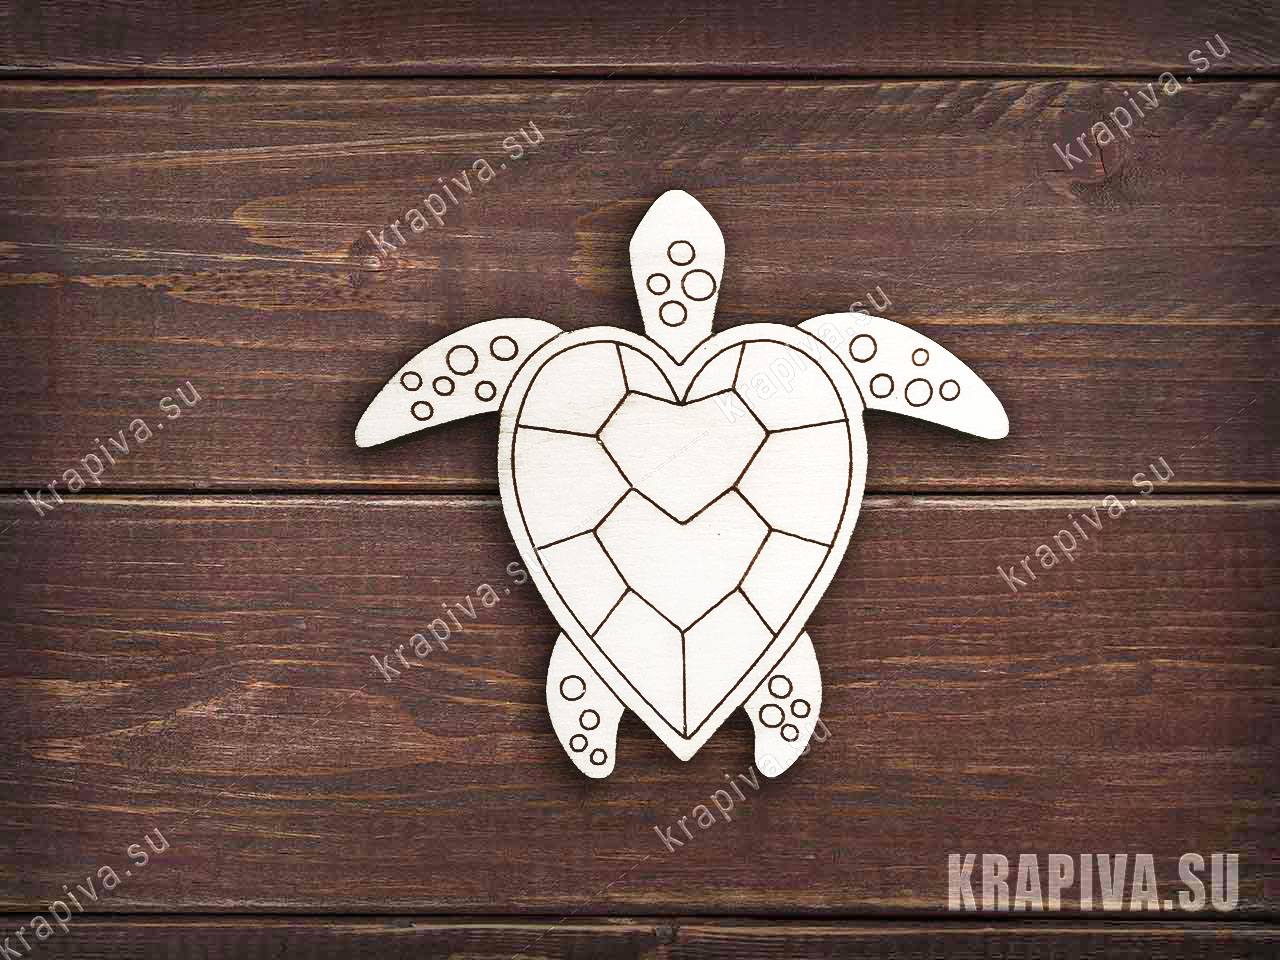 Статуэтки черепах - домашние талисманы и приятные подарки